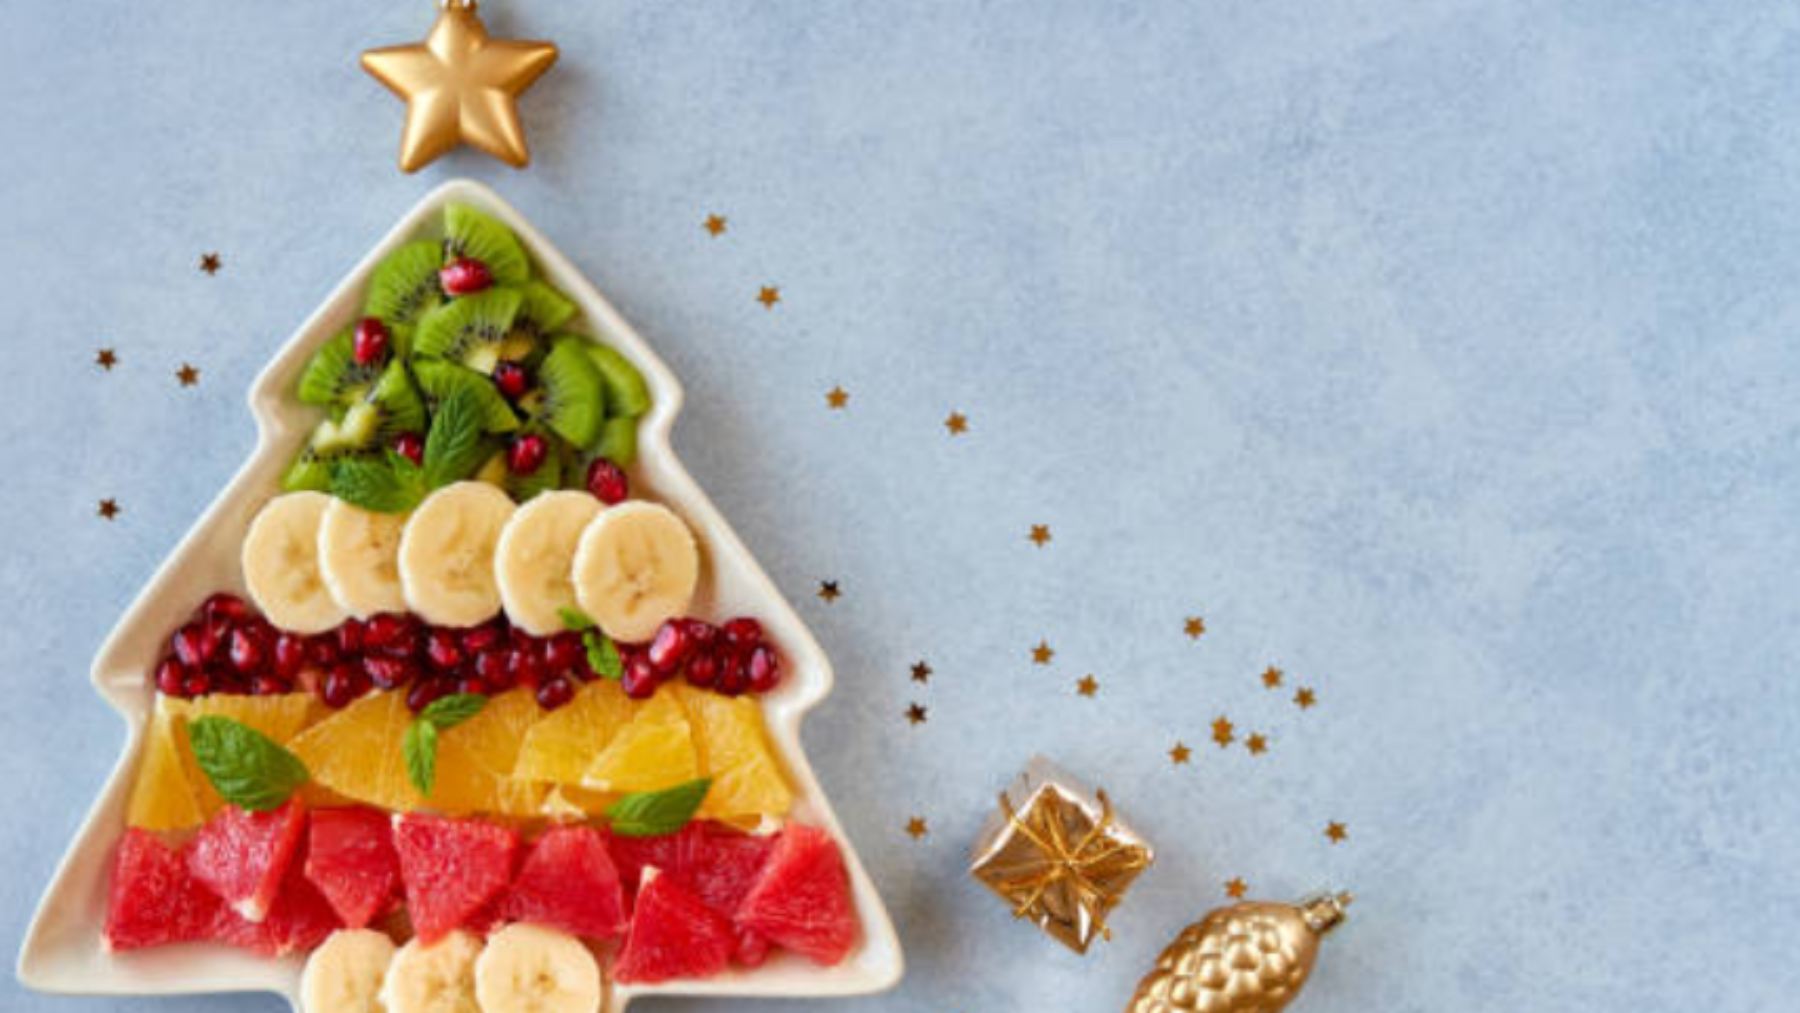 Recetas de postres sanos con fruta para esta Navidad